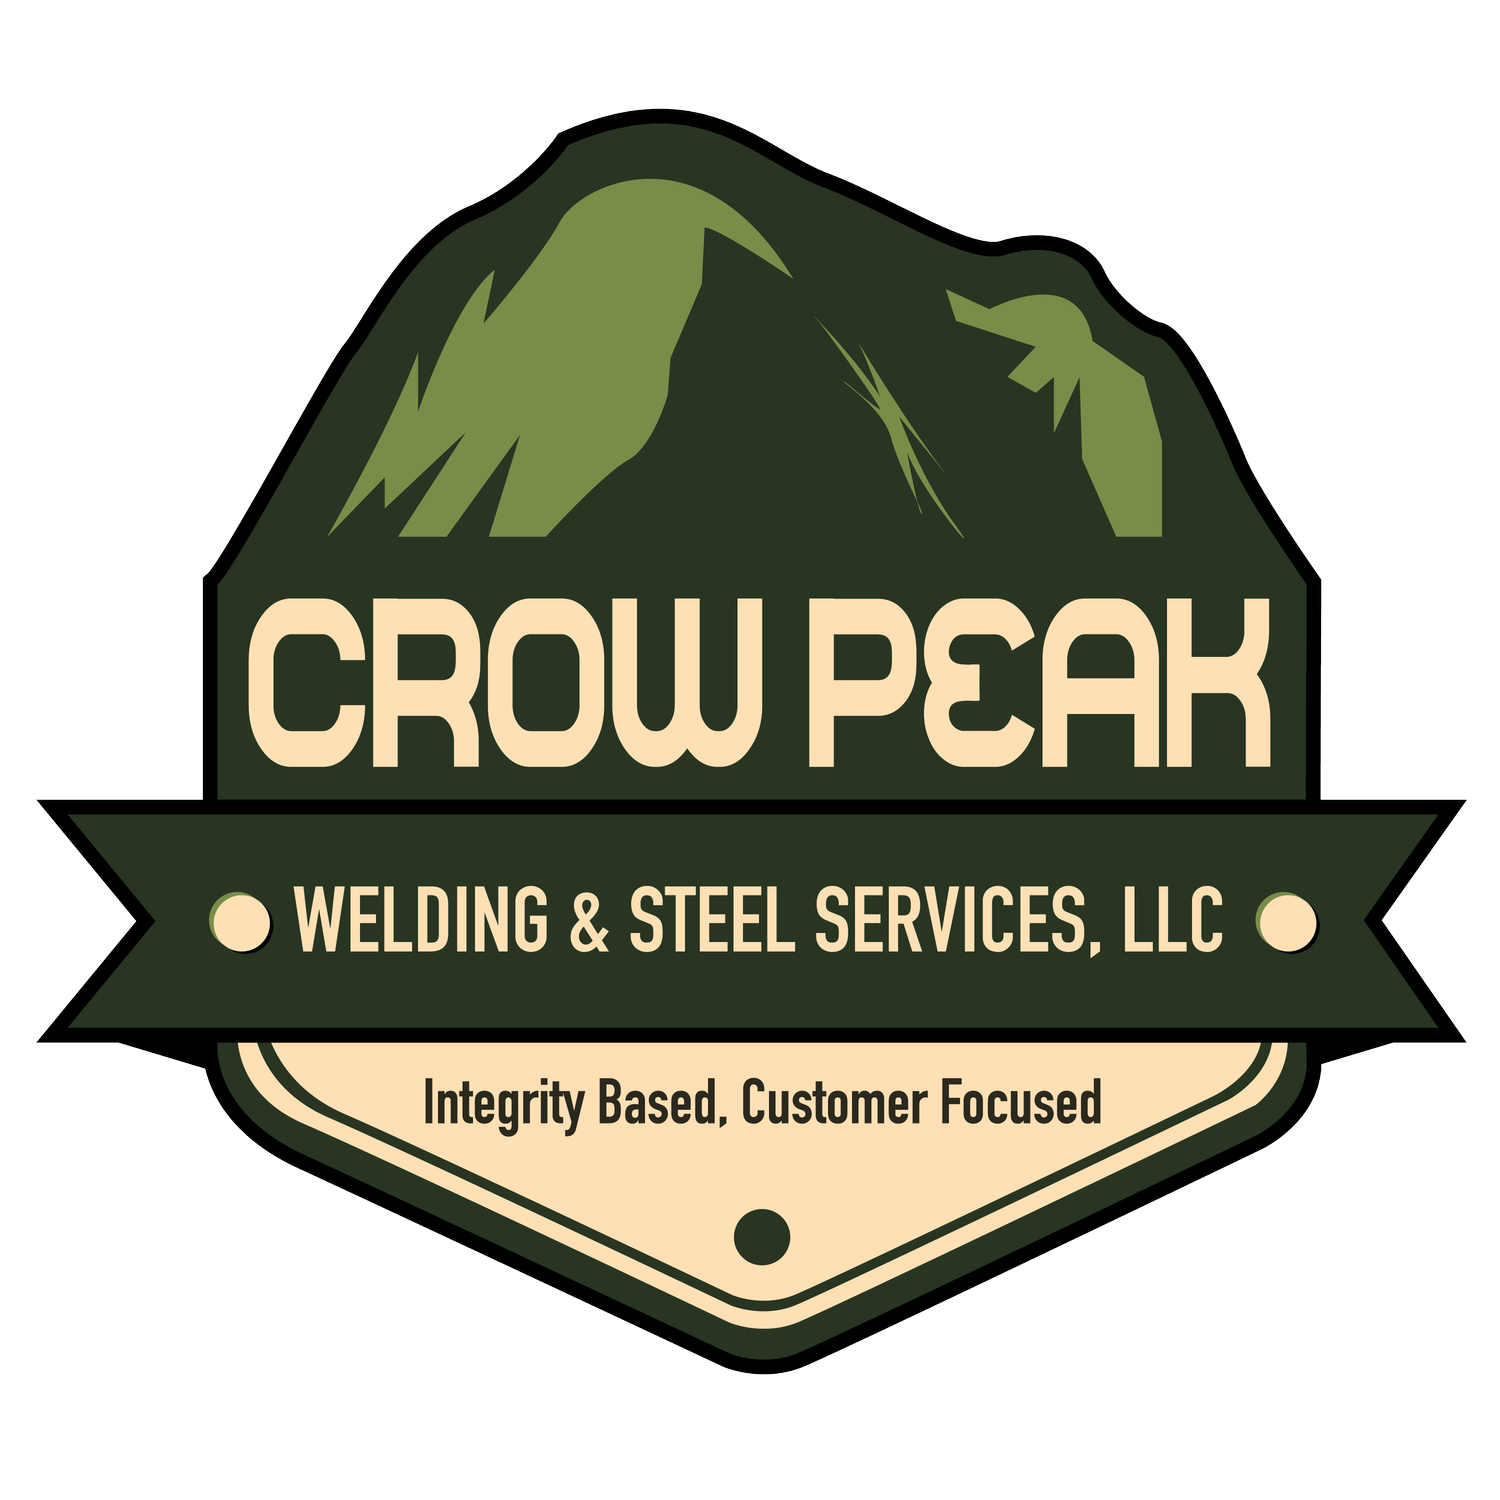 Crow Peak Welding